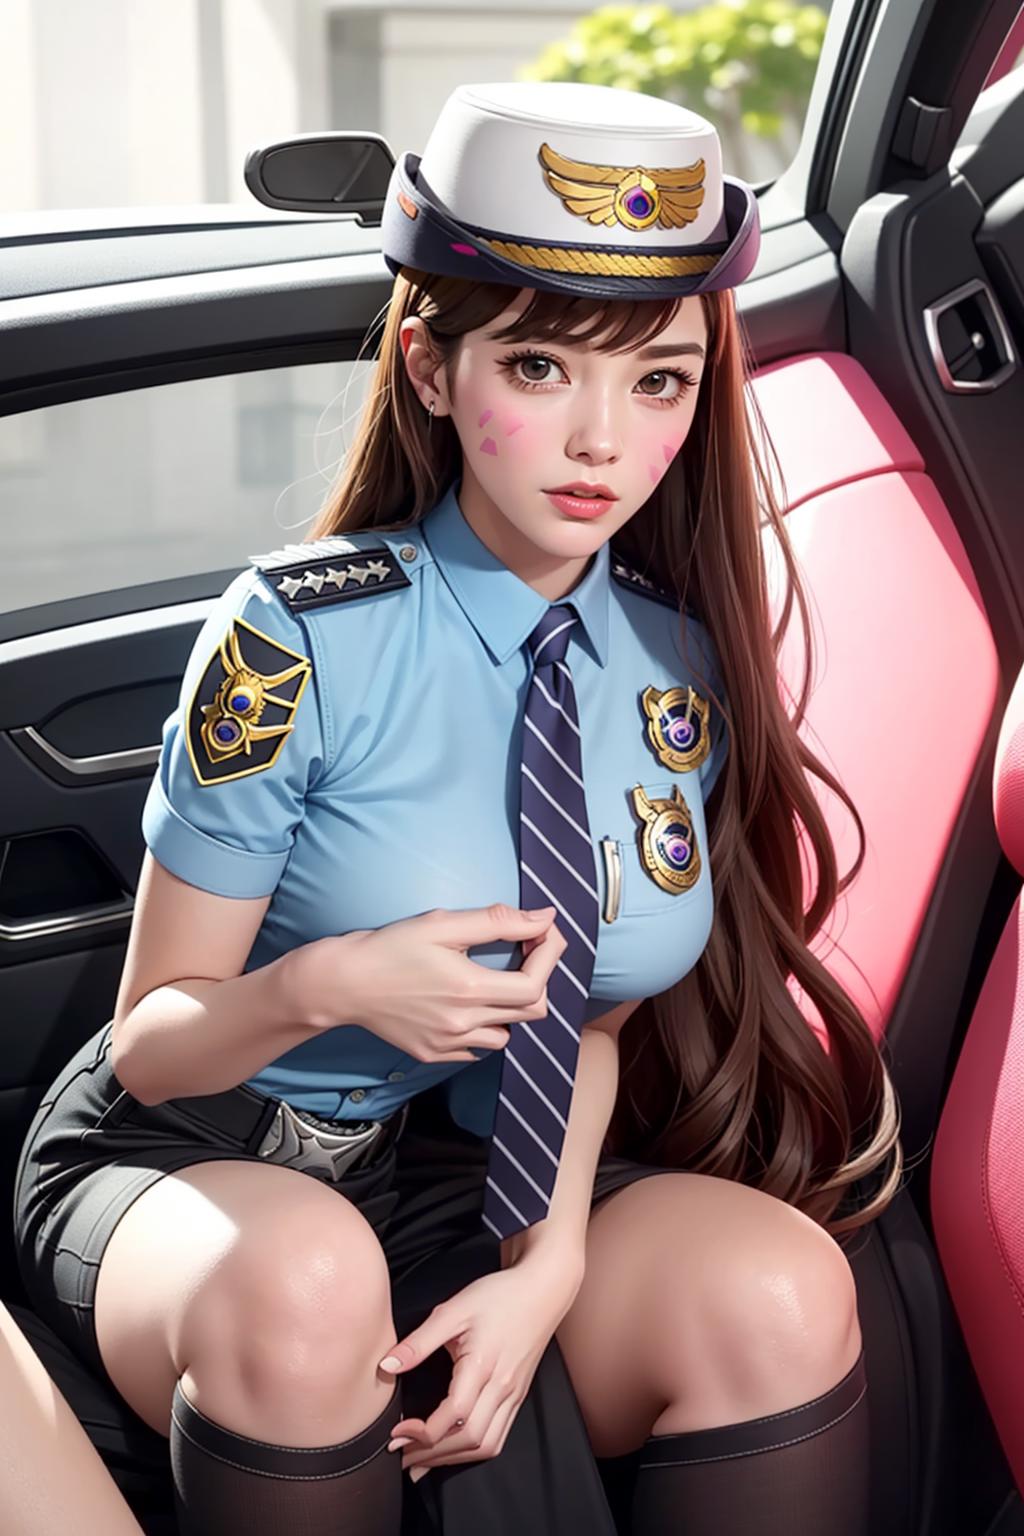 Officer D.Va ( う-´)づ/̵͇̿̿/’̿’̿ ̿ ̿̿ ̿̿  (LoRA) image by joyy114